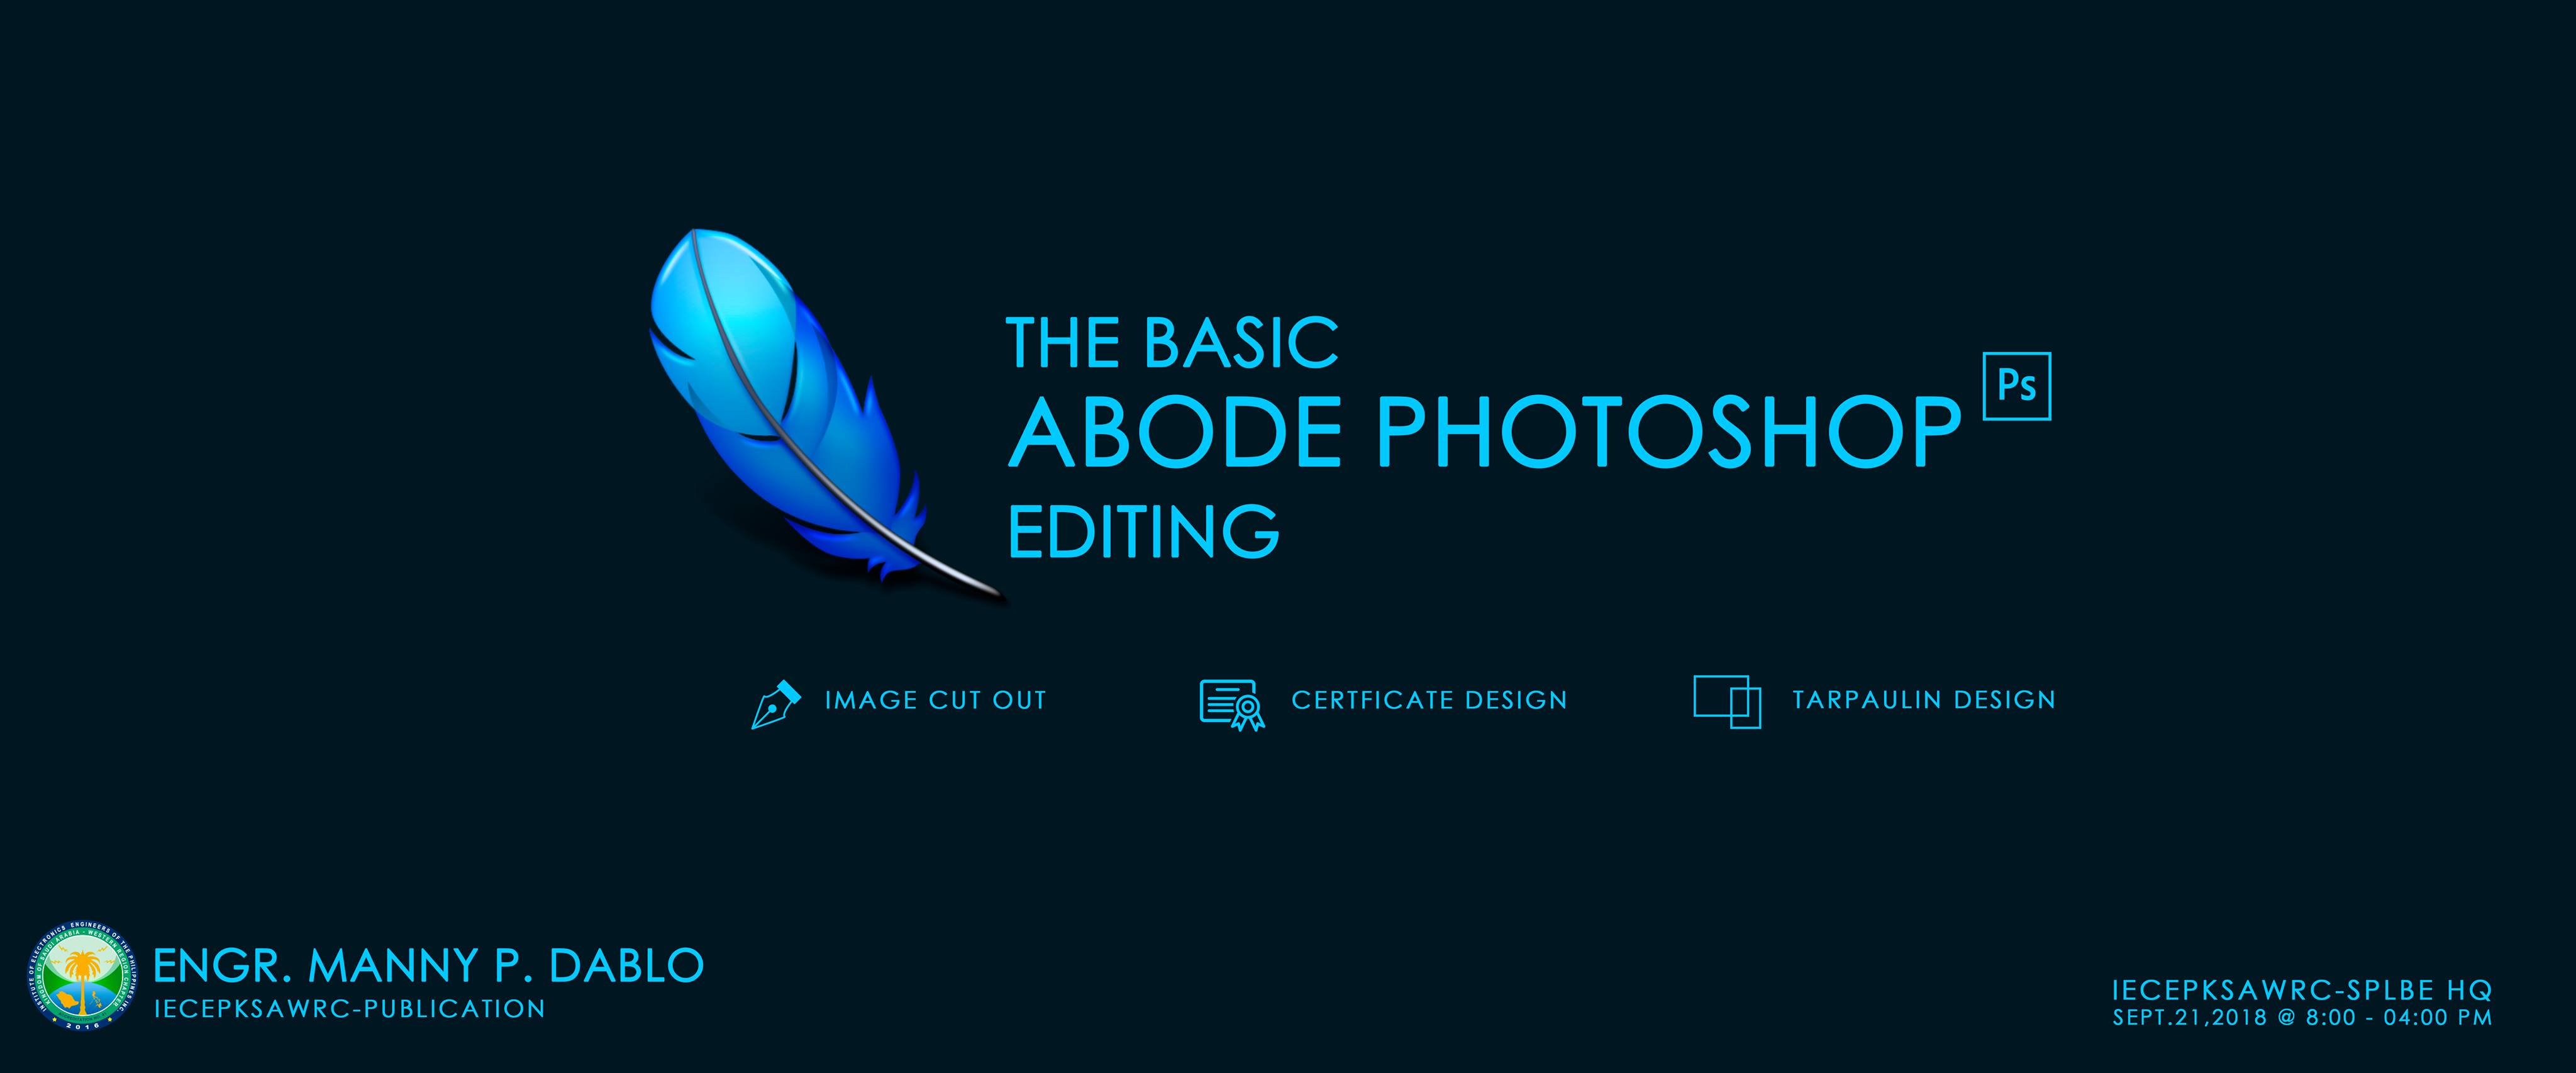 The Basic – Adobe Photoshop Editing